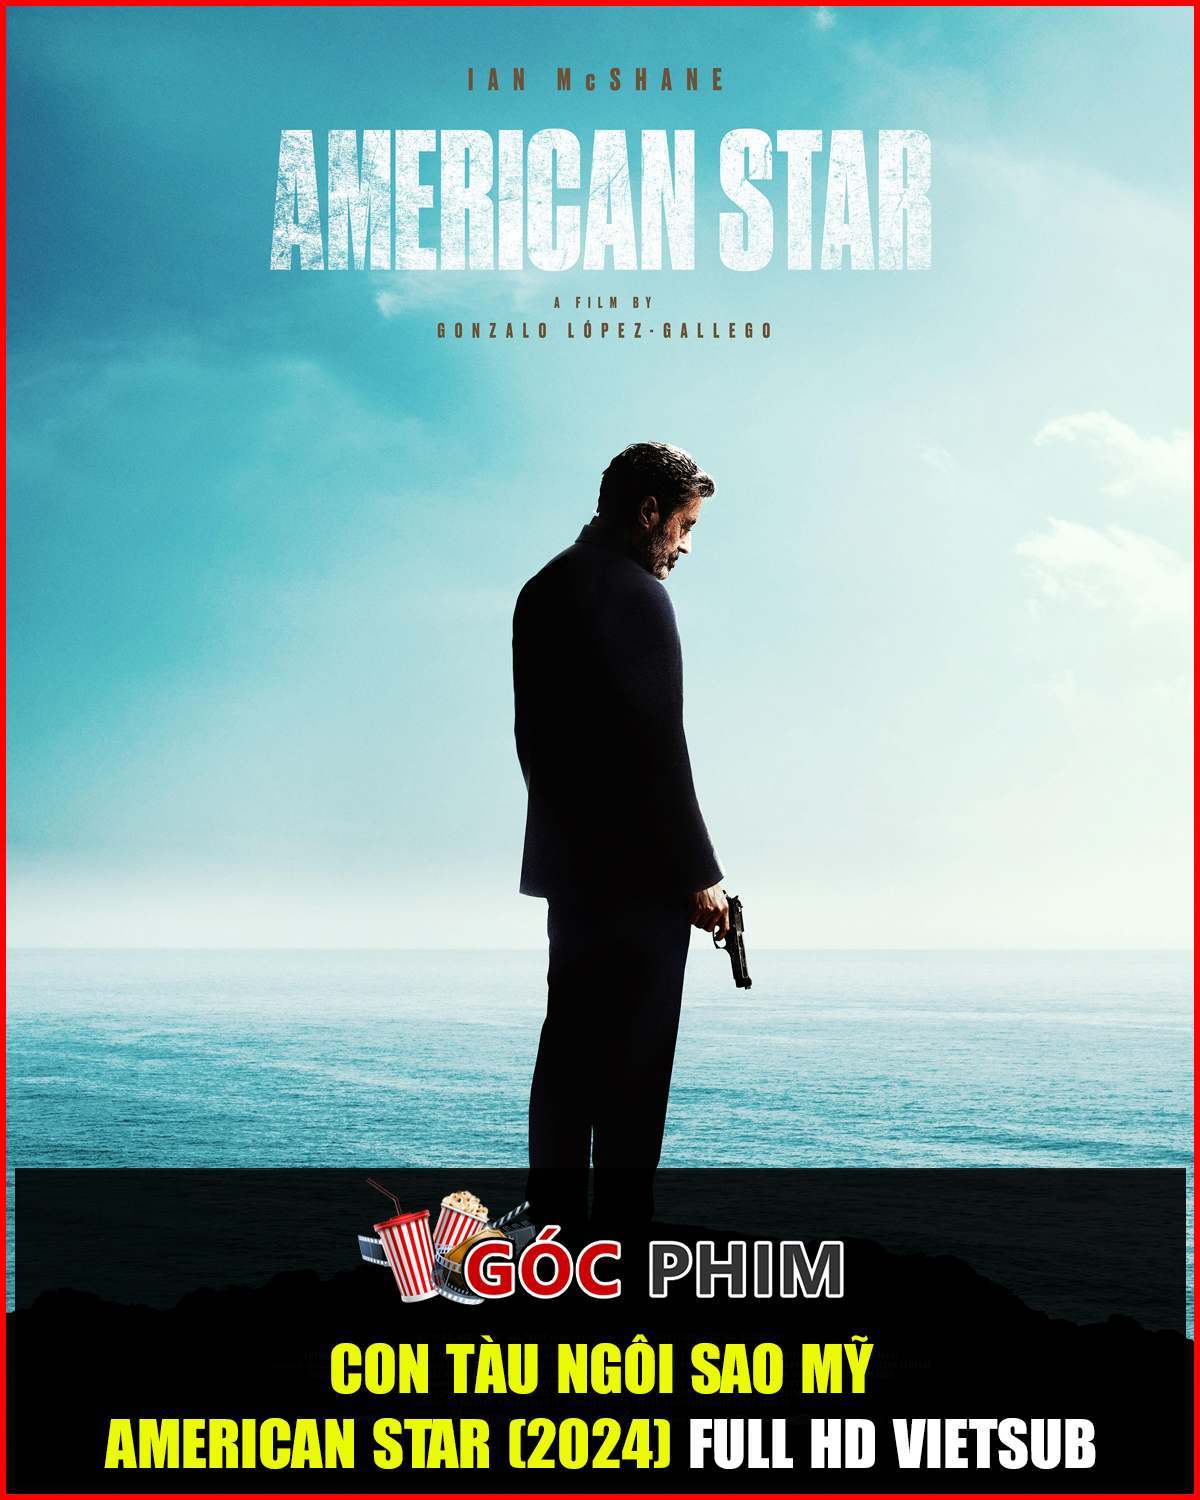 Con Tàu Ngôi Sao Mỹ – American Star (2024) Full HD Vietsub